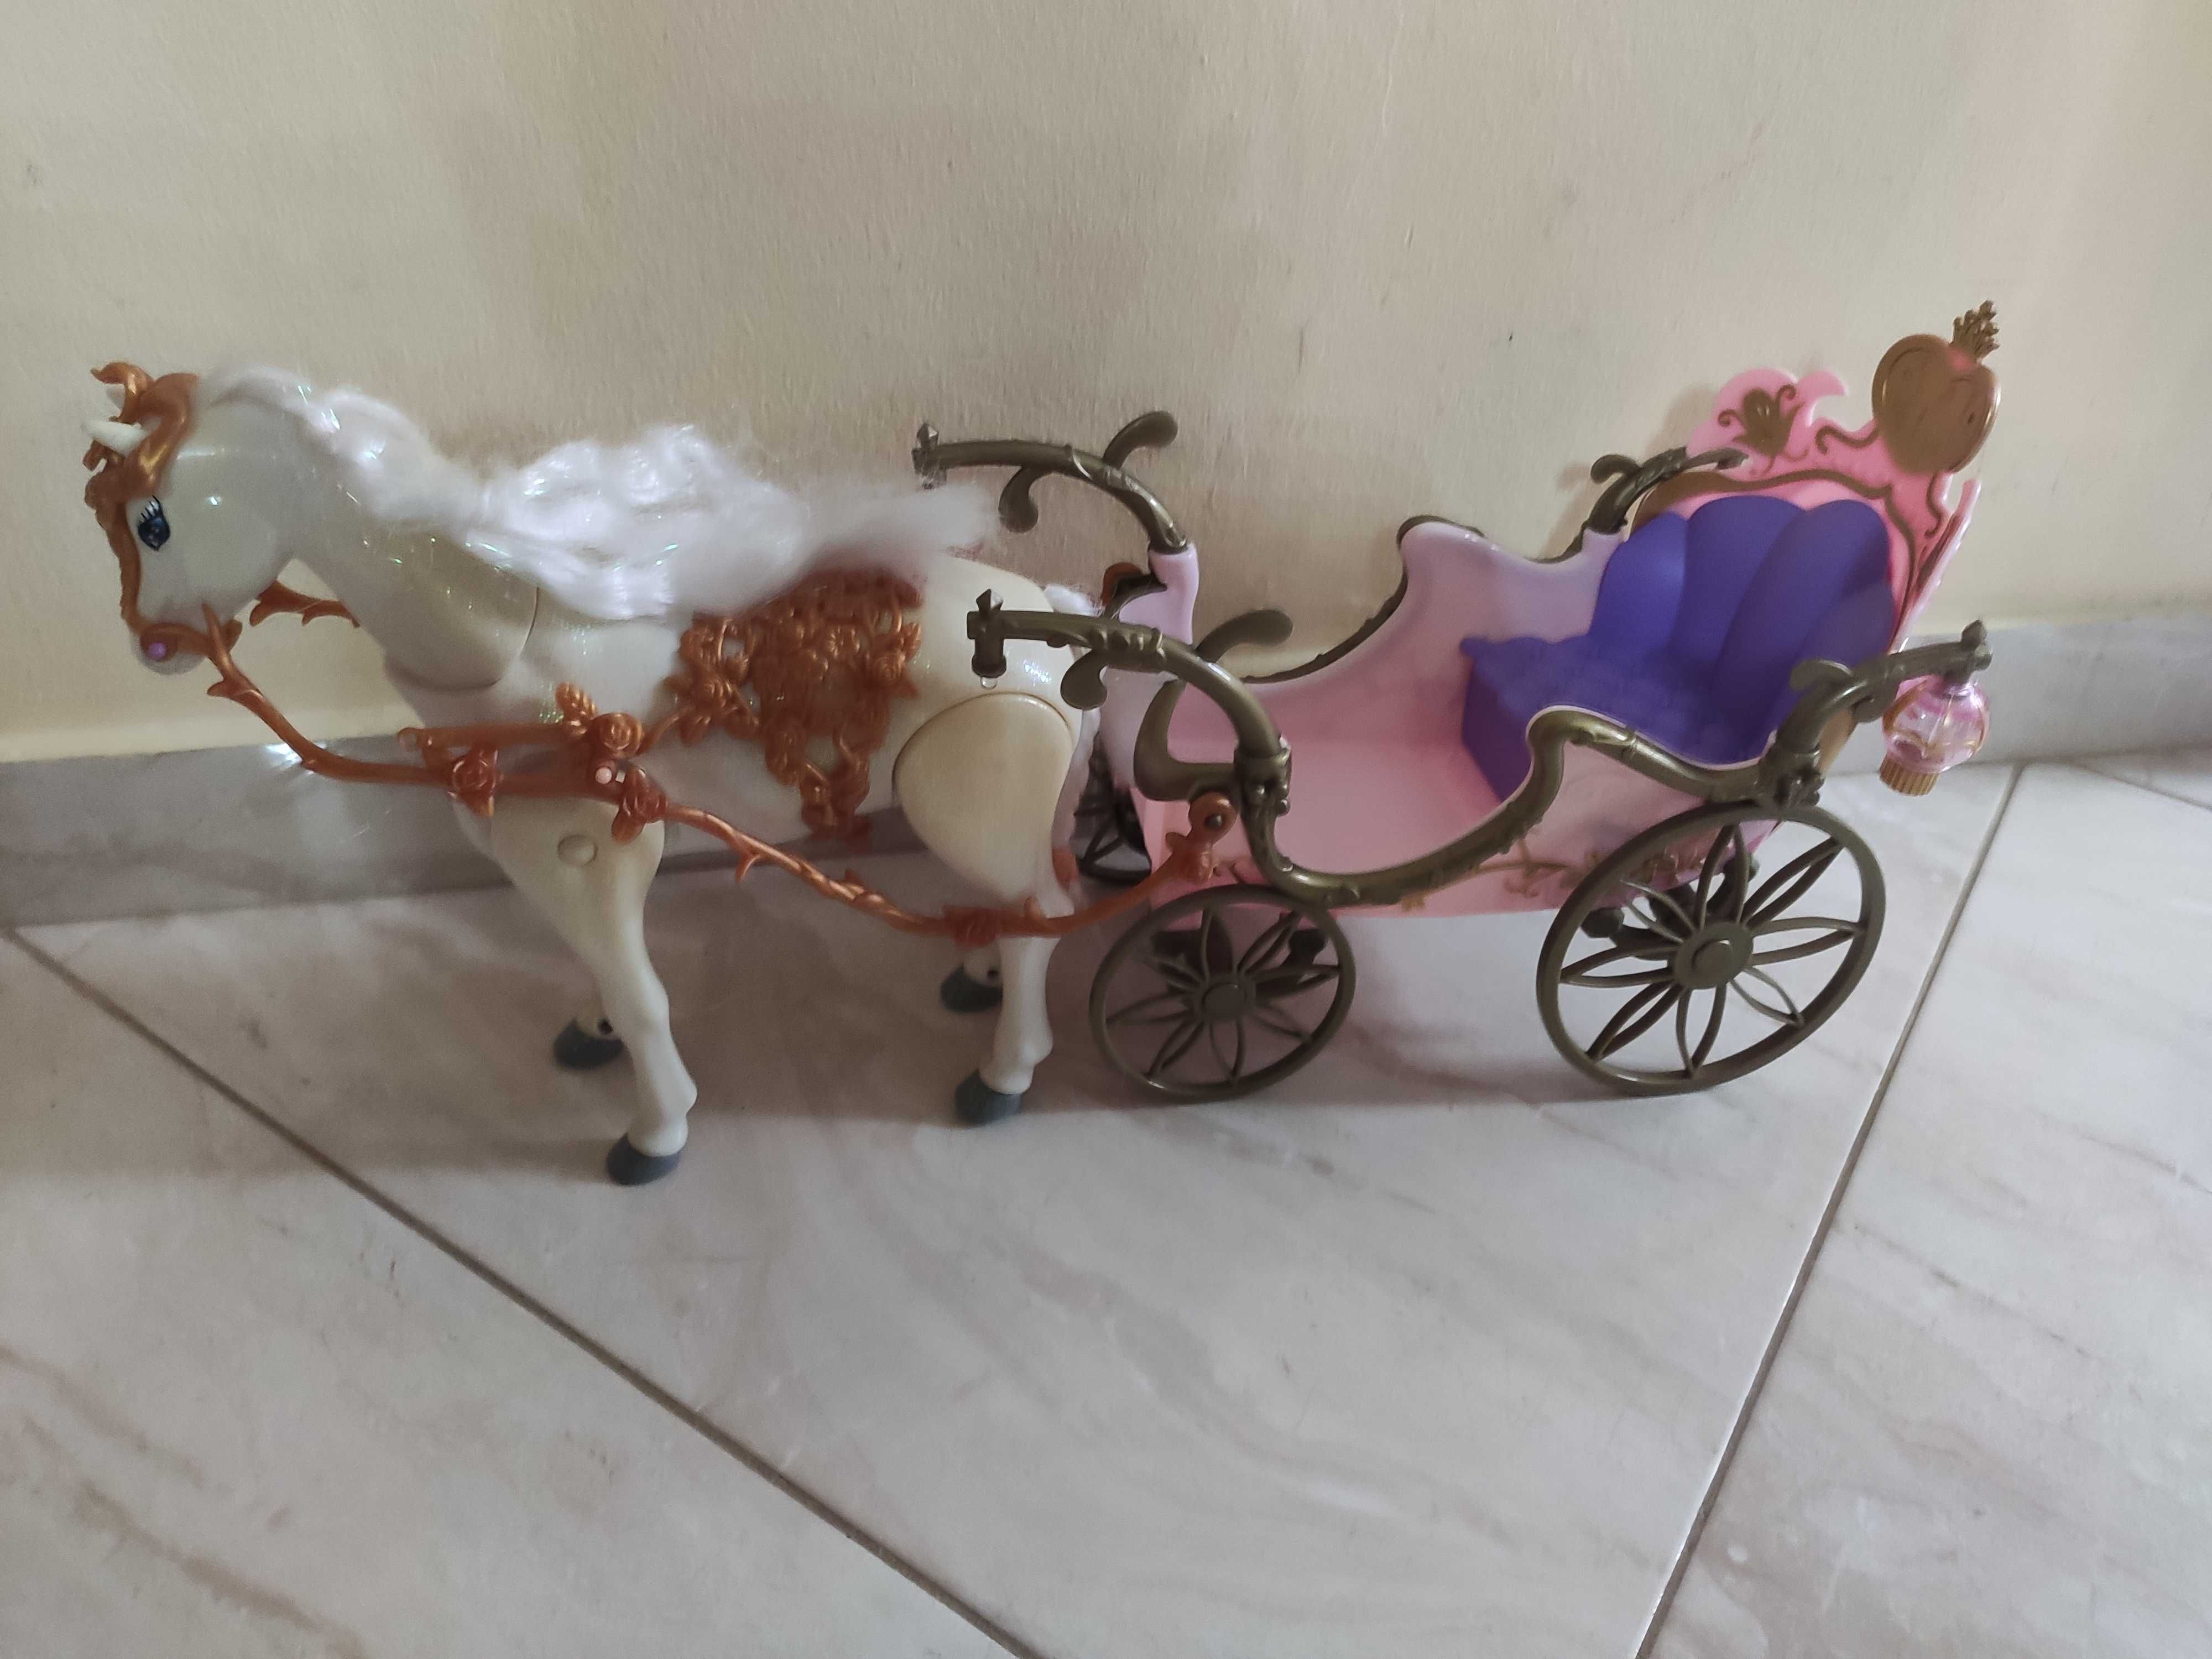 Karoca dla lalek Barbie z chodzącym koniem.